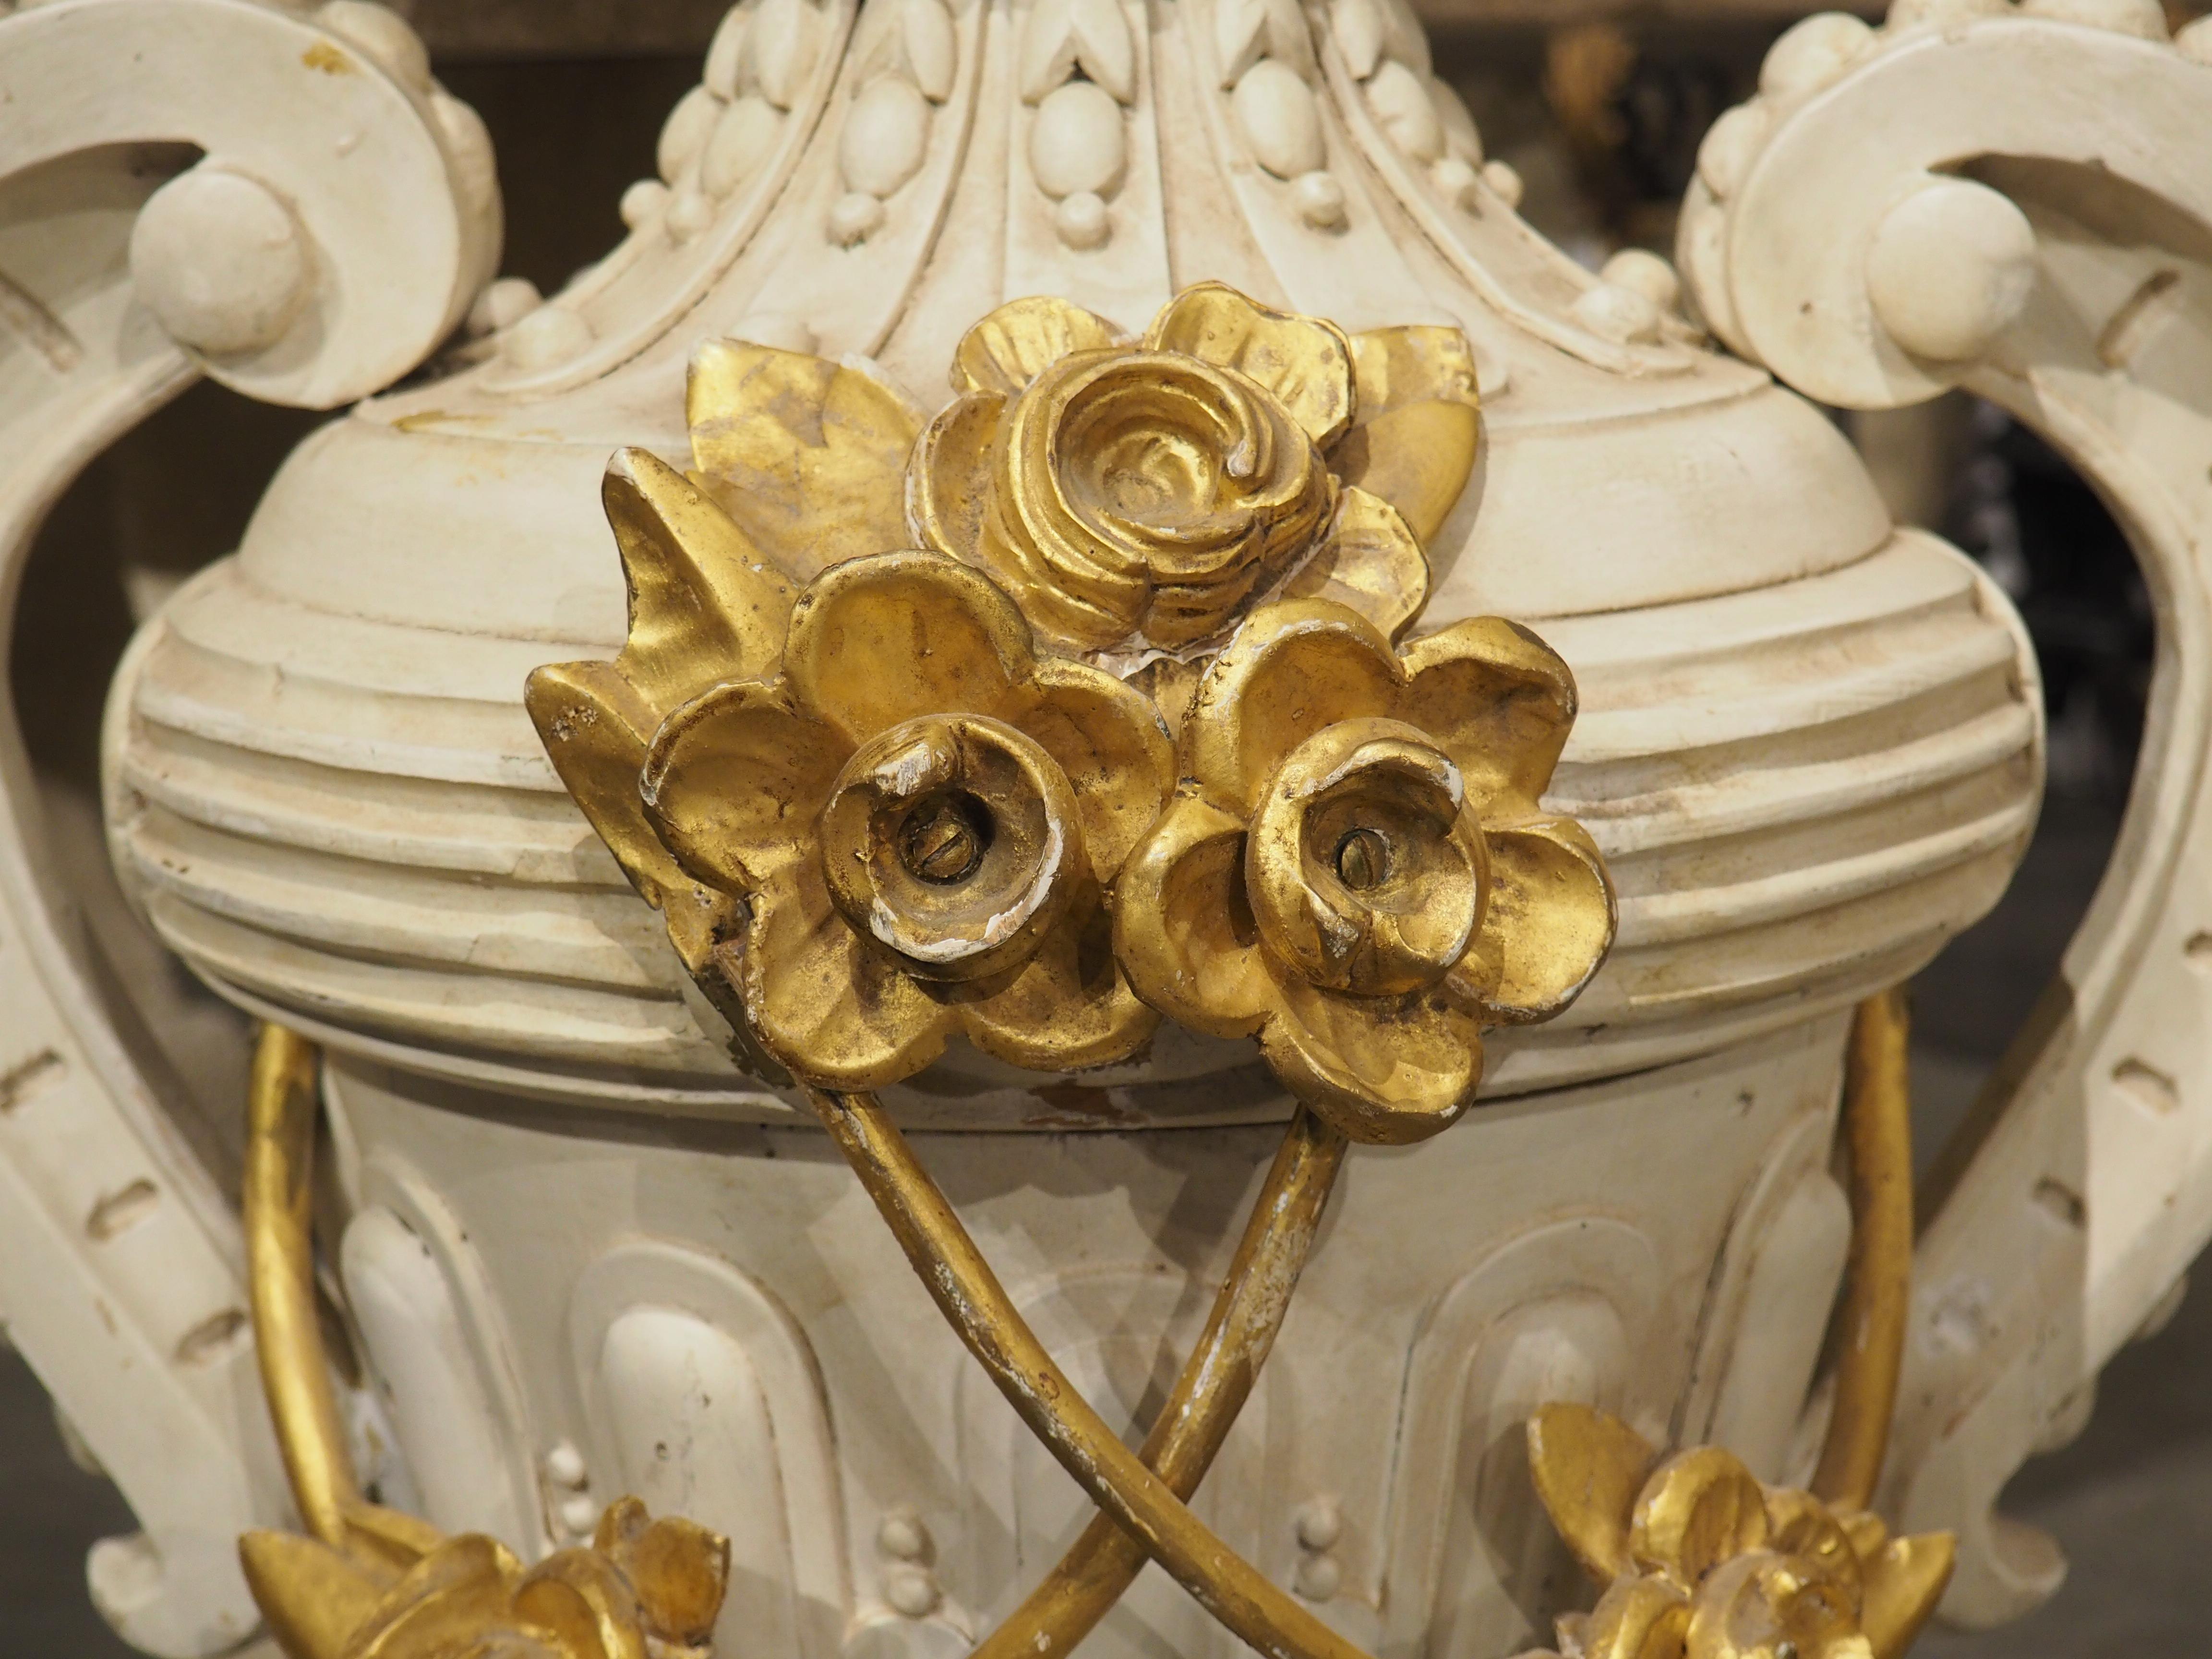 Sculptée à la main à Florence, en Italie, dans les années 1800, cette grande urne en bois a été recouverte d'une laque blanche et d'éléments dorés inspirés de la nature. Un bouquet de fruits dorés s'élance du sommet, au-dessus d'un col orné de